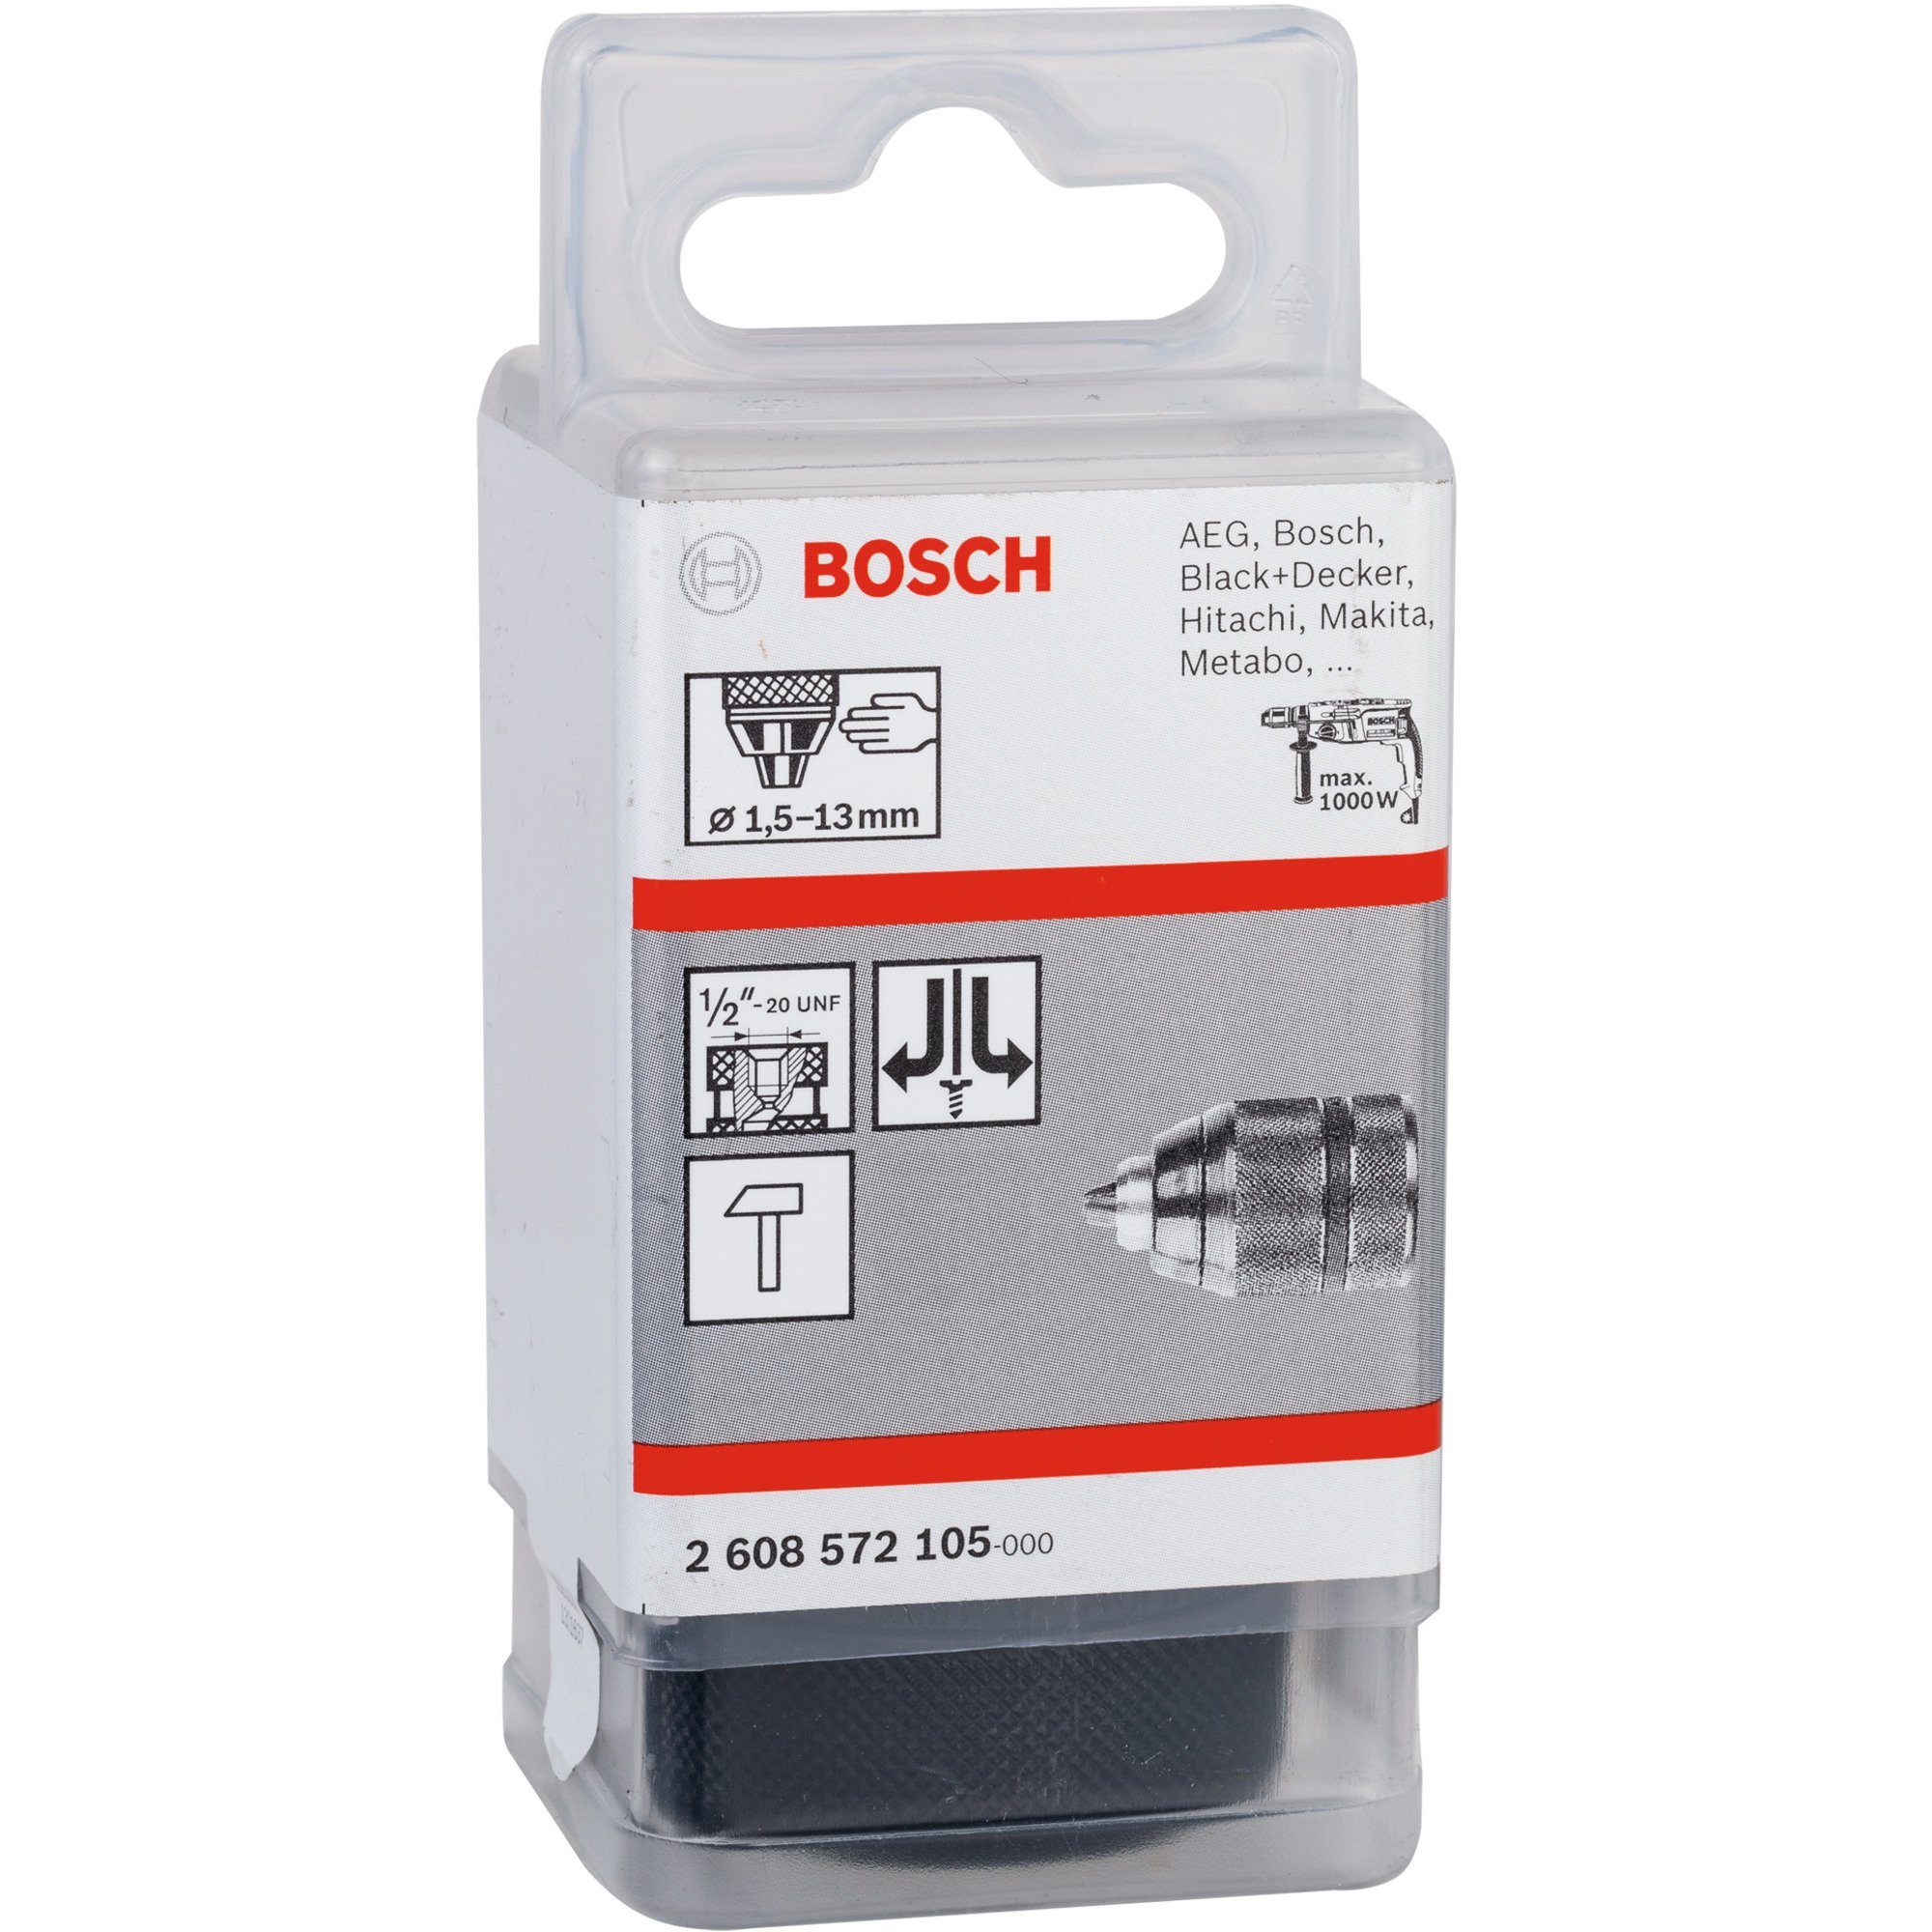 BOSCH und Bohrer- Professional Bosch Bitset Schnellspannbohrfutter